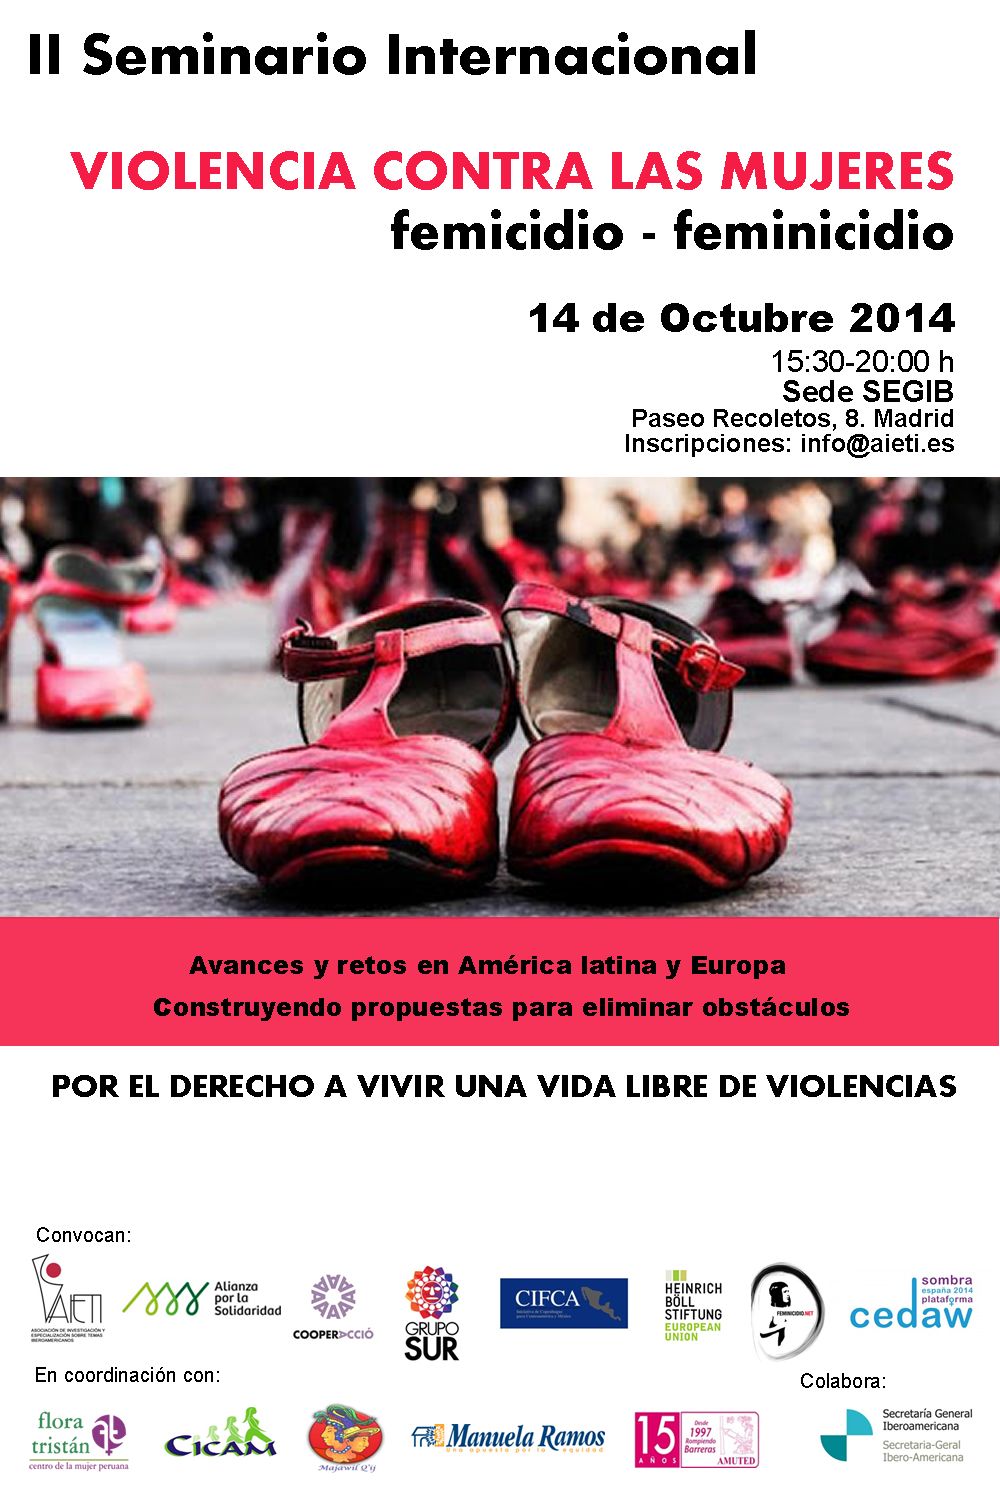 II SEMINARIO INTERNACIONAL SOBRE VIOLENCIA CONTRA LA MUJER. Feminicidio / Femicidio